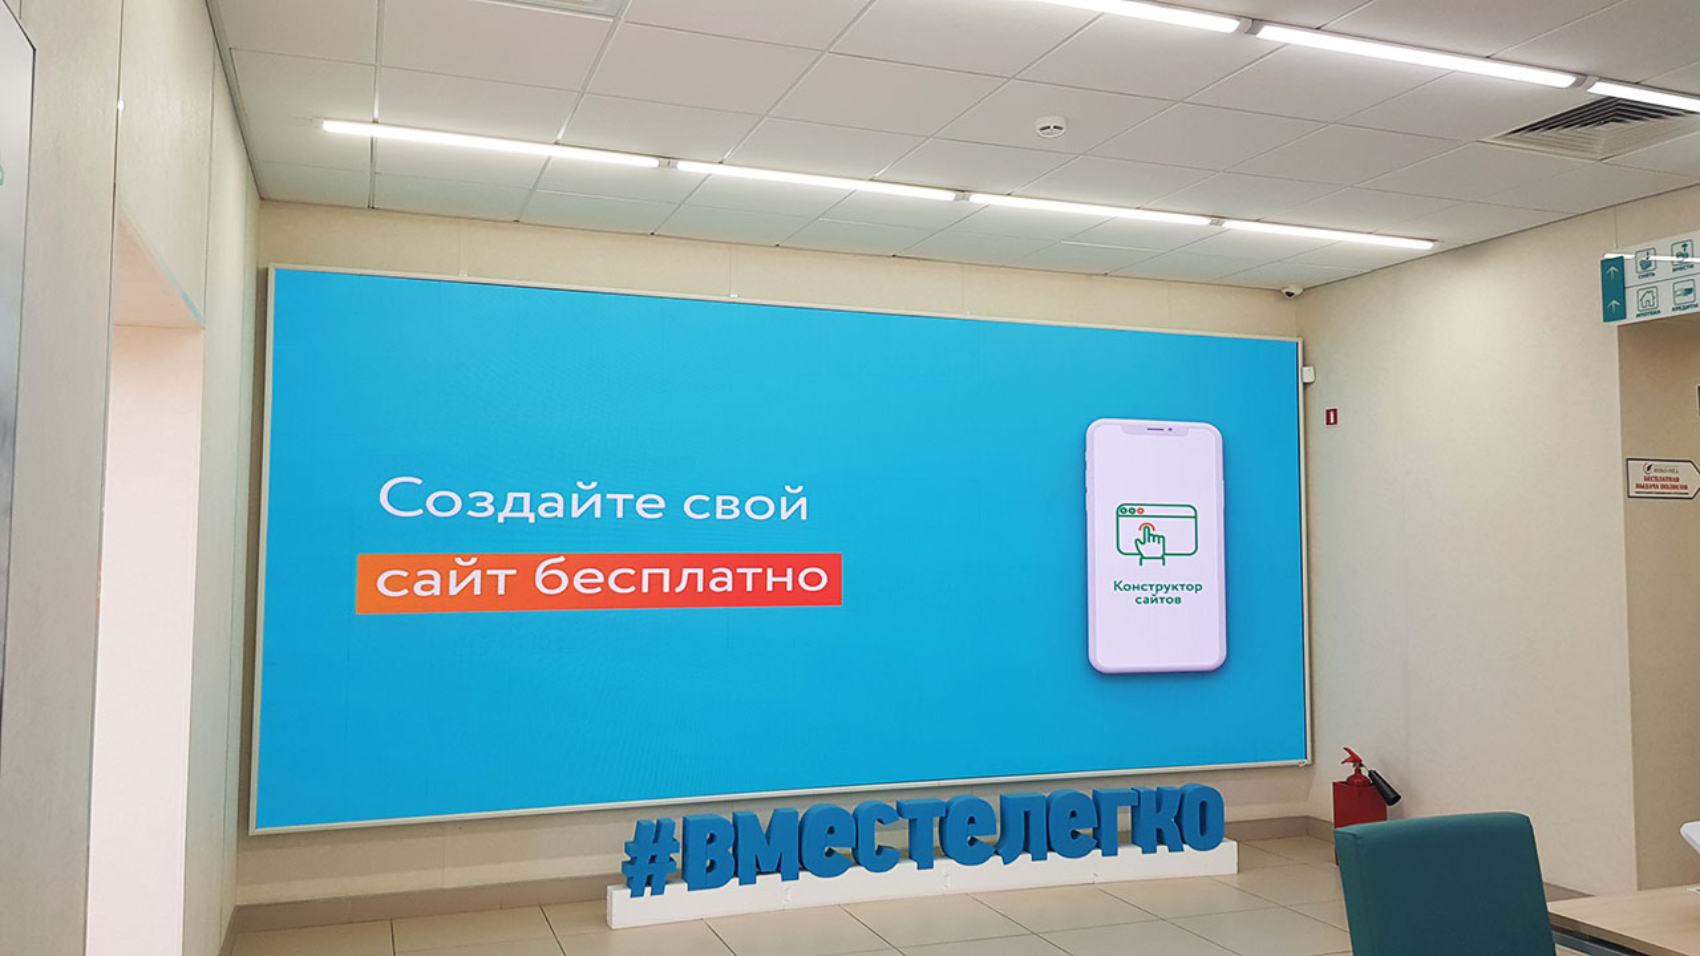 Светодиодный экран Сбербанк Воронеж